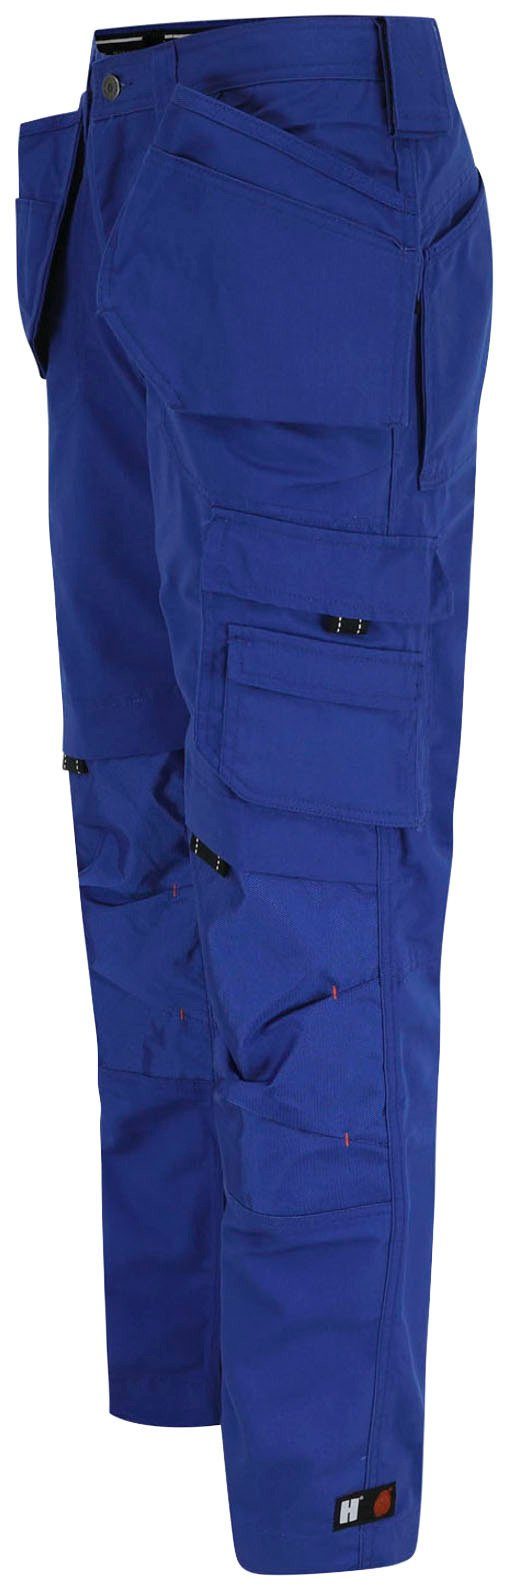 Herock Arbeitshose Dagan Hose Wasserabweisend, blau robust, 11 Nageltaschen) (inkl. Taschen